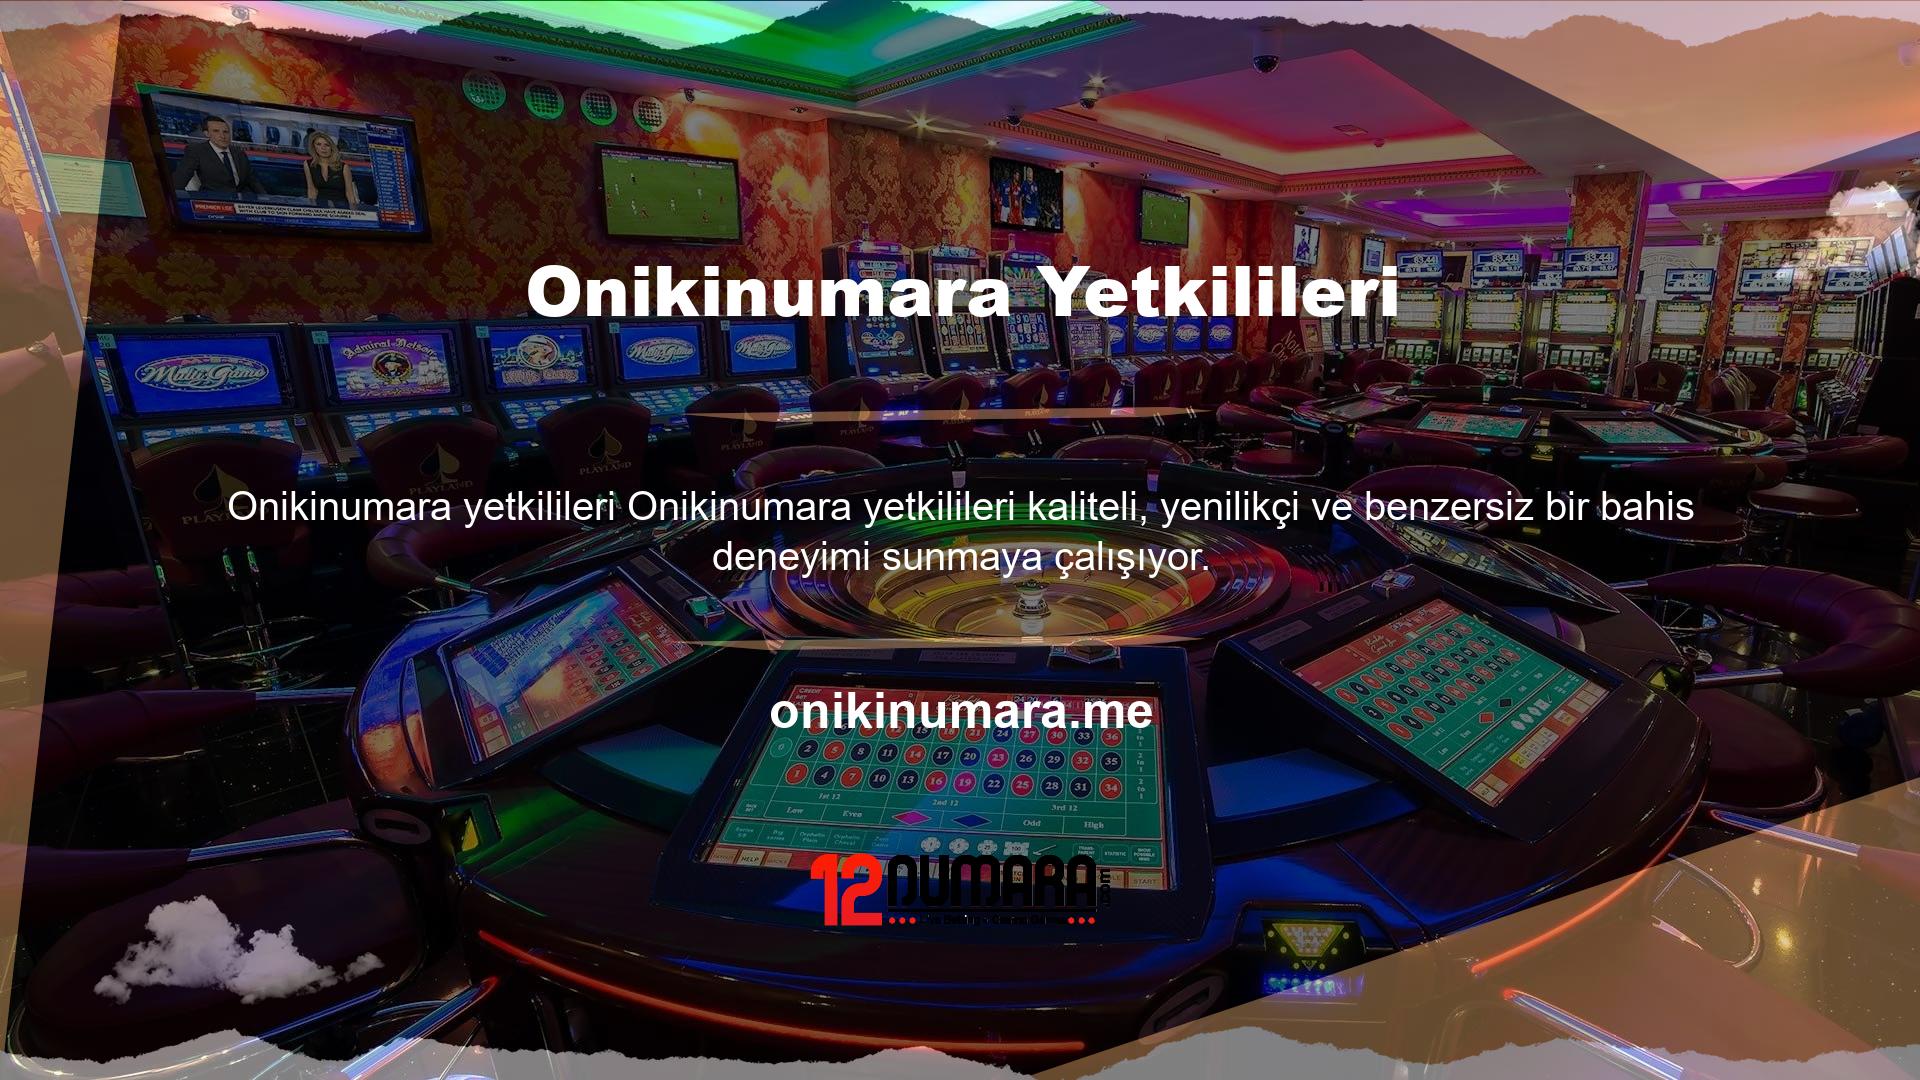 Kullanıcılara kaliteli oyun hizmetleri Onikinumara tarafından sağlanmaktadır